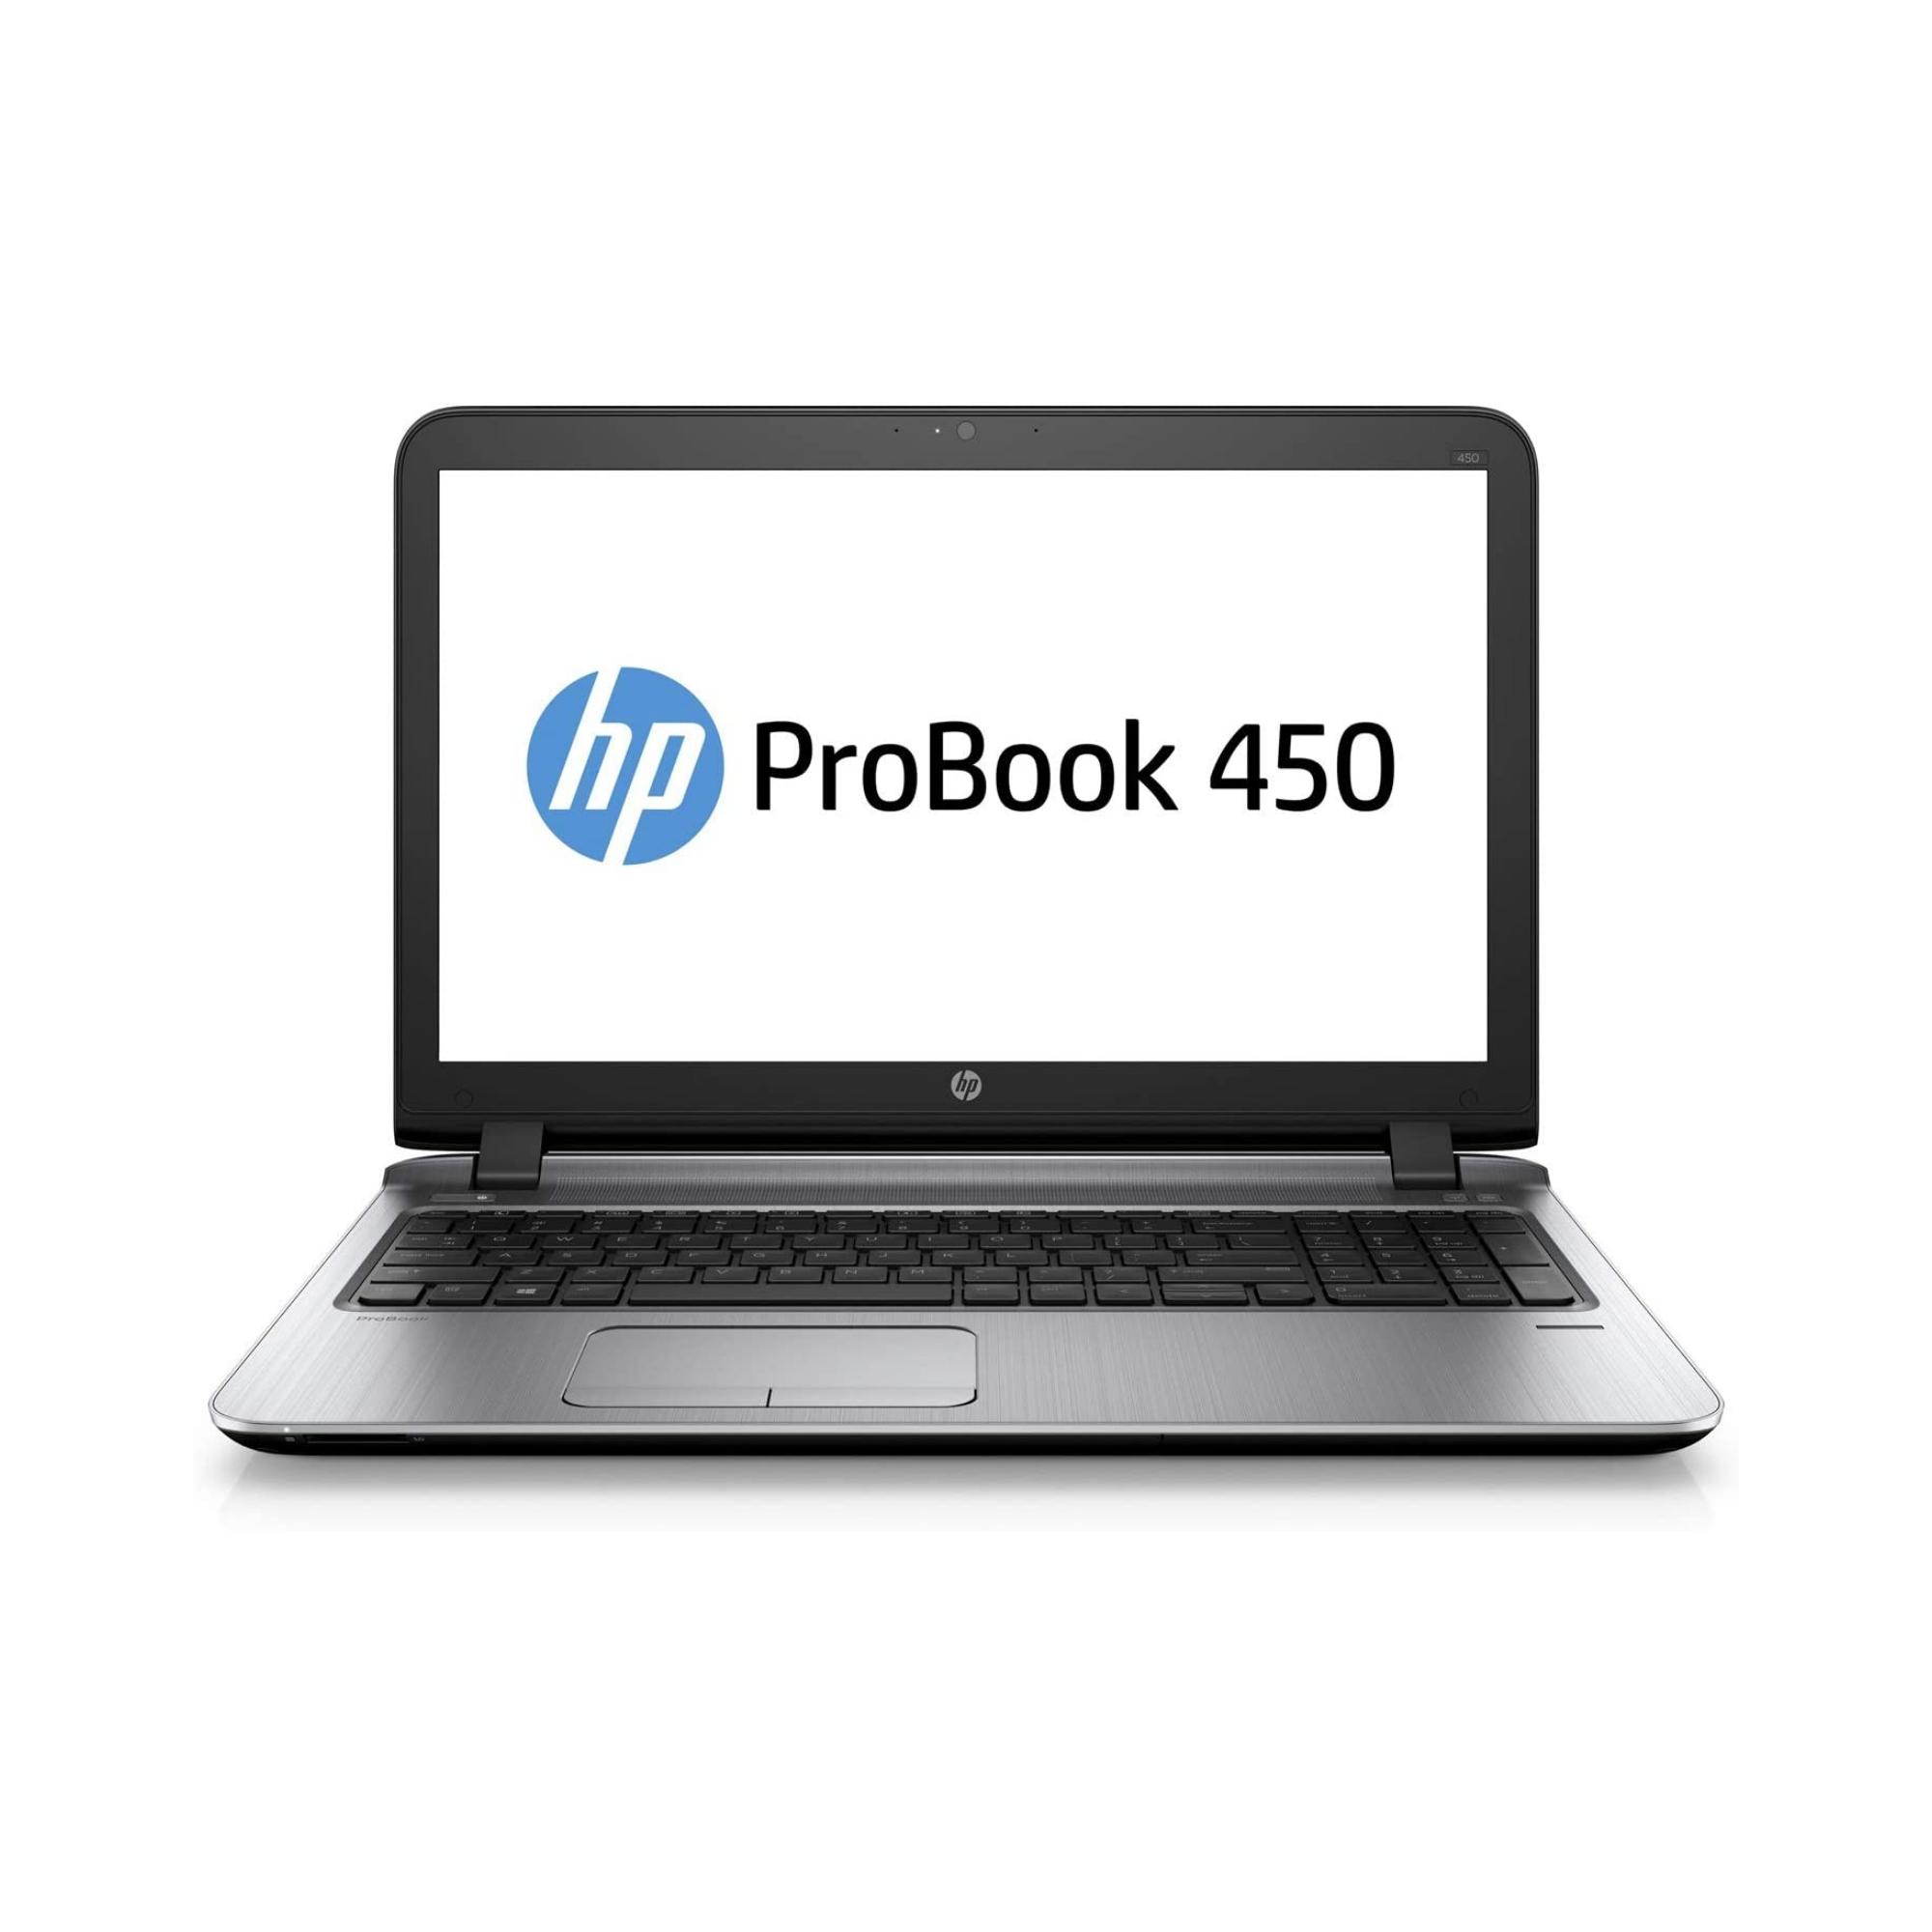 Desktop – HP PROBOOK 450 G3 / I7 6500U / 240GB SSD / 8GB / 15.6″ / INTEL HD 520 / W10P